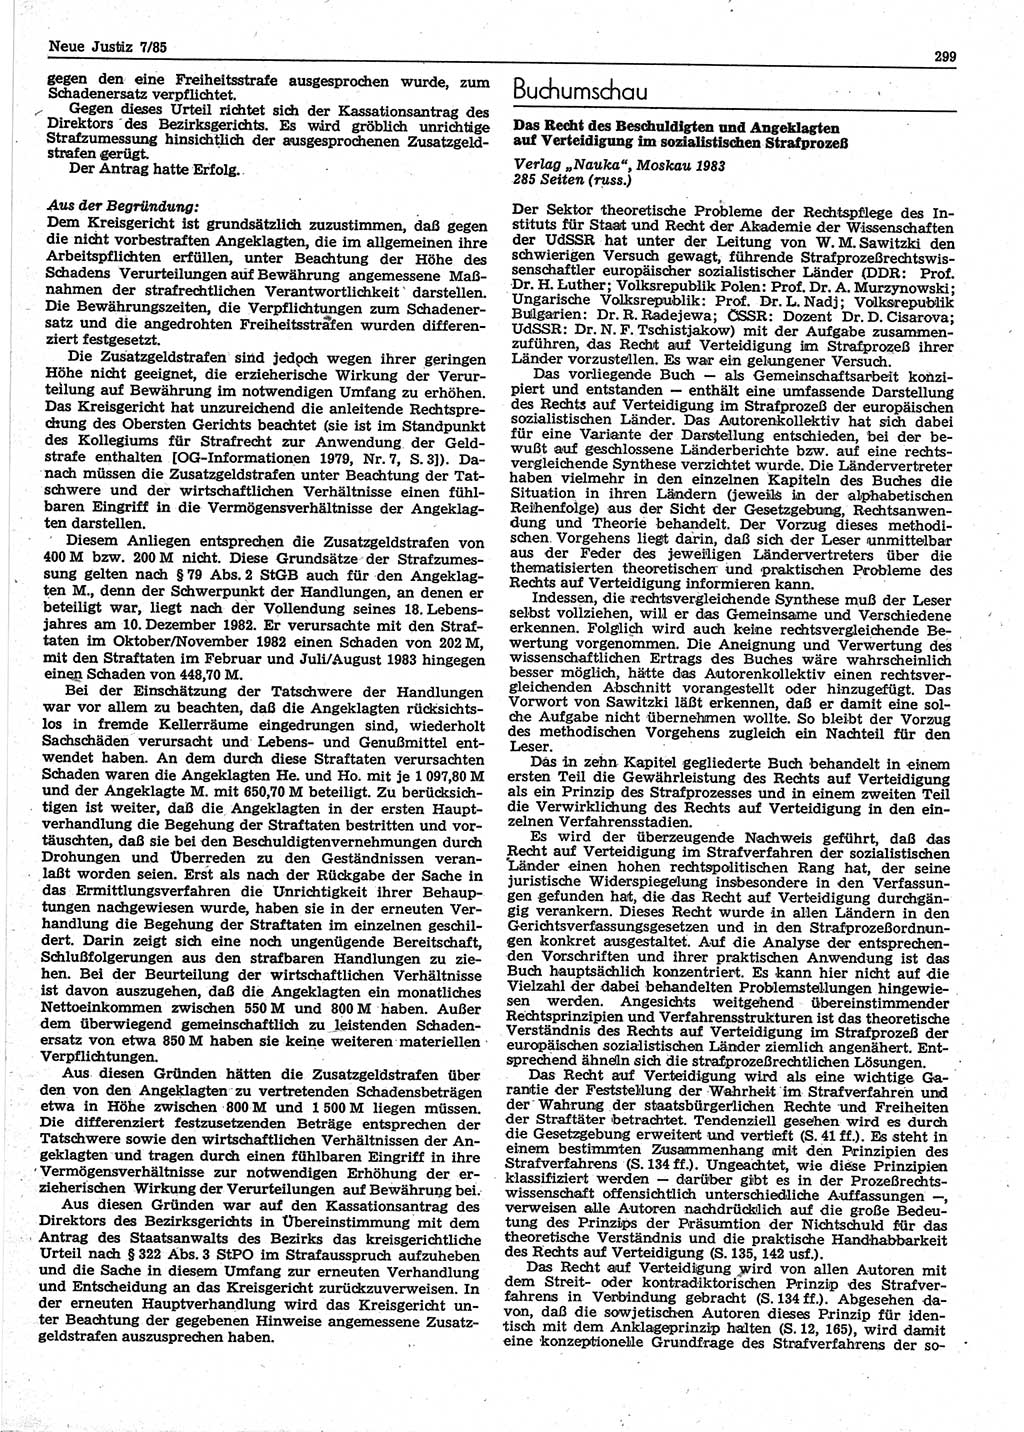 Neue Justiz (NJ), Zeitschrift für sozialistisches Recht und Gesetzlichkeit [Deutsche Demokratische Republik (DDR)], 39. Jahrgang 1985, Seite 299 (NJ DDR 1985, S. 299)